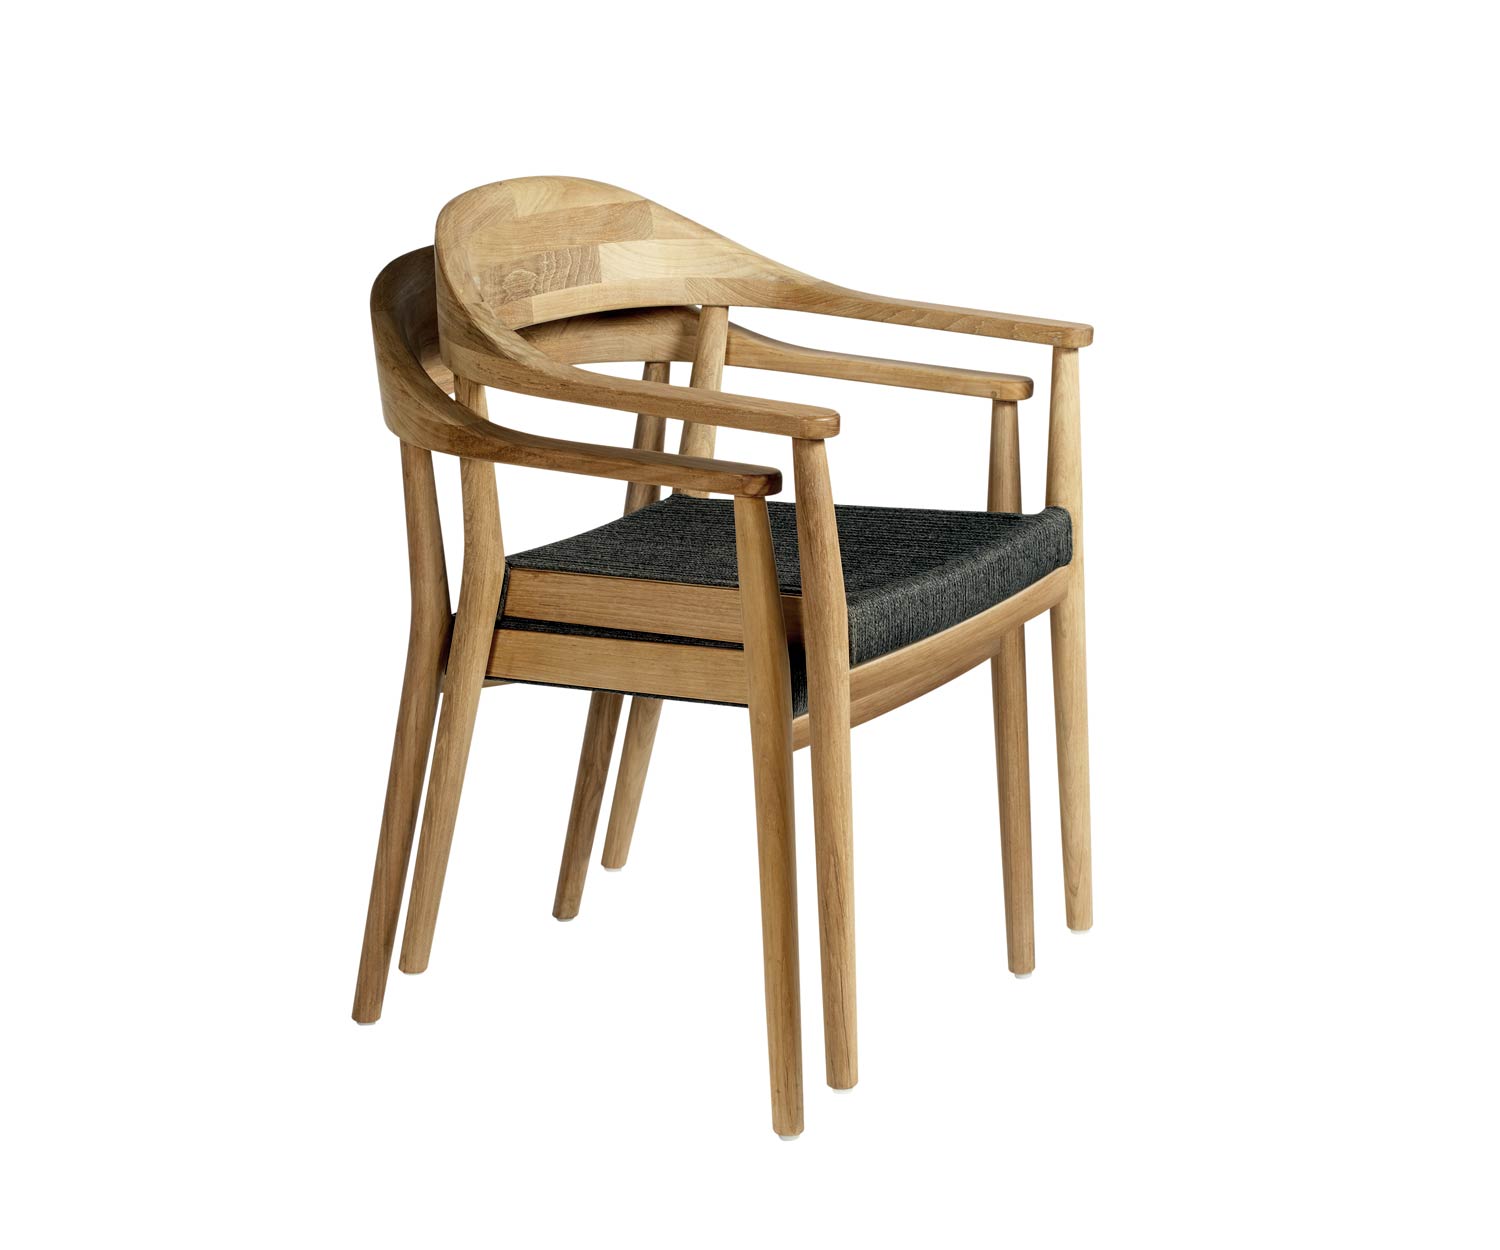 Oasiq Design Copenhagen stoel is stapelbaar tot twee stoelen